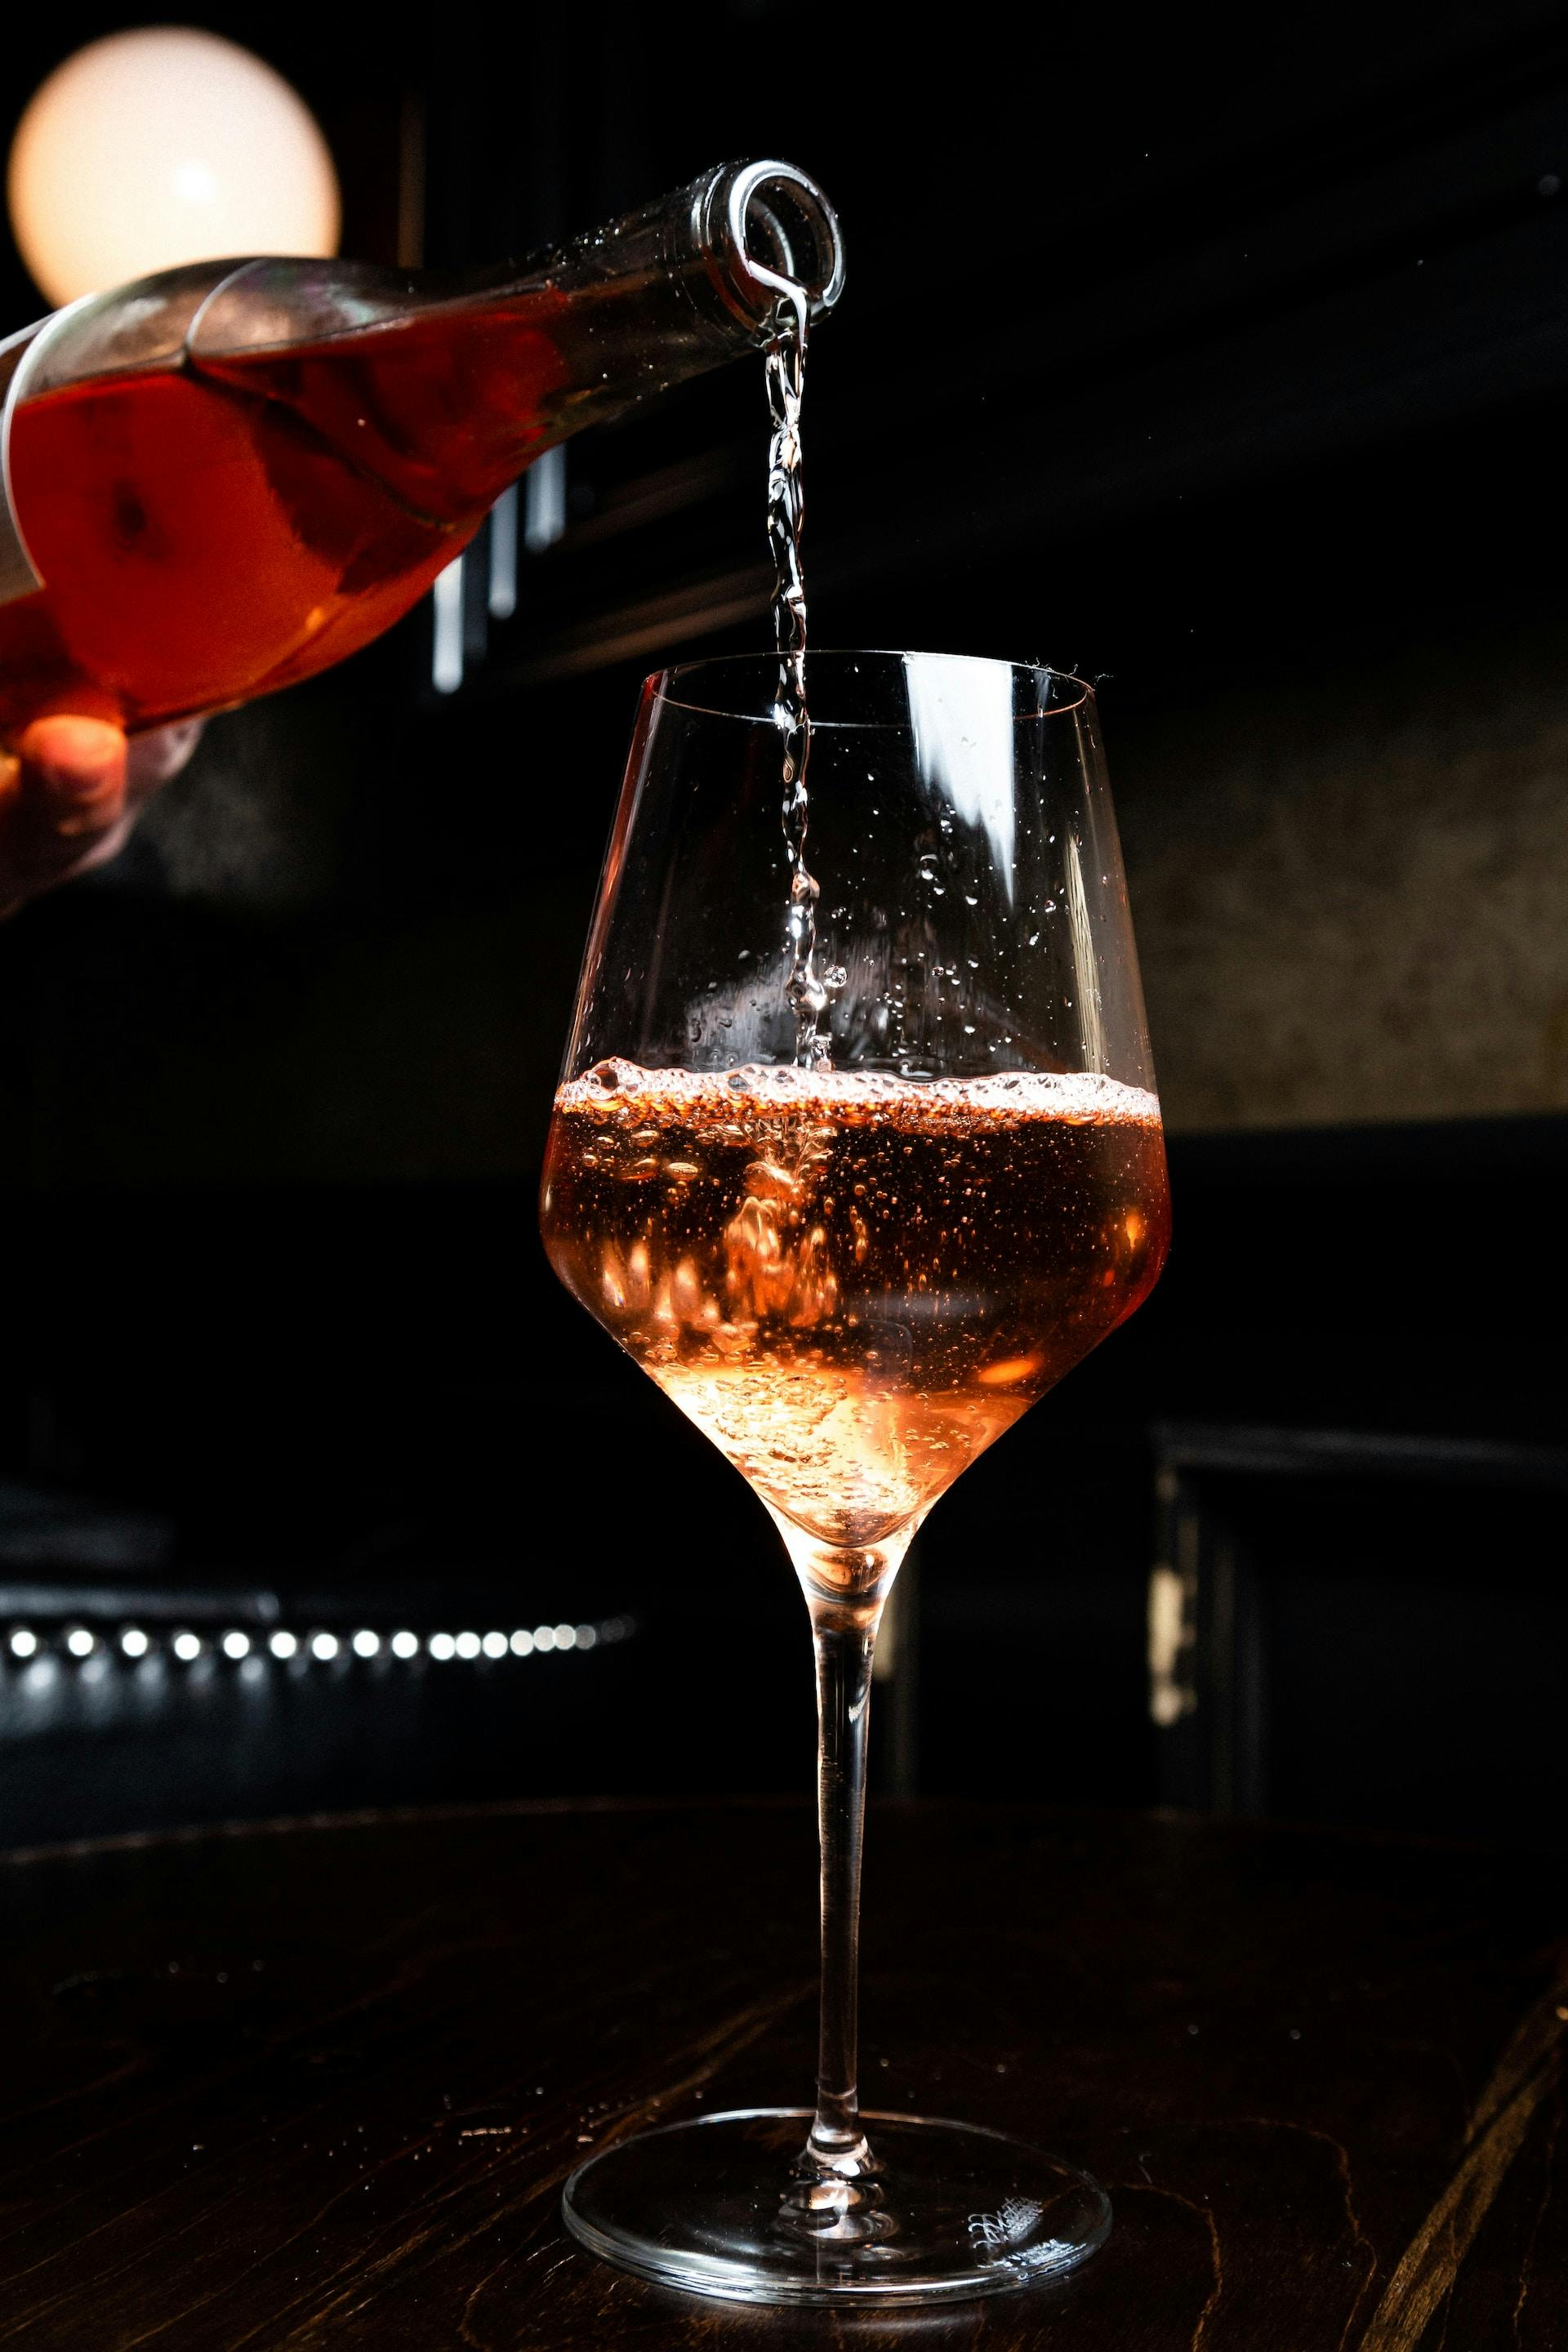 Flasche gießt rosafarbene Flüssigkeit ins Glas ein